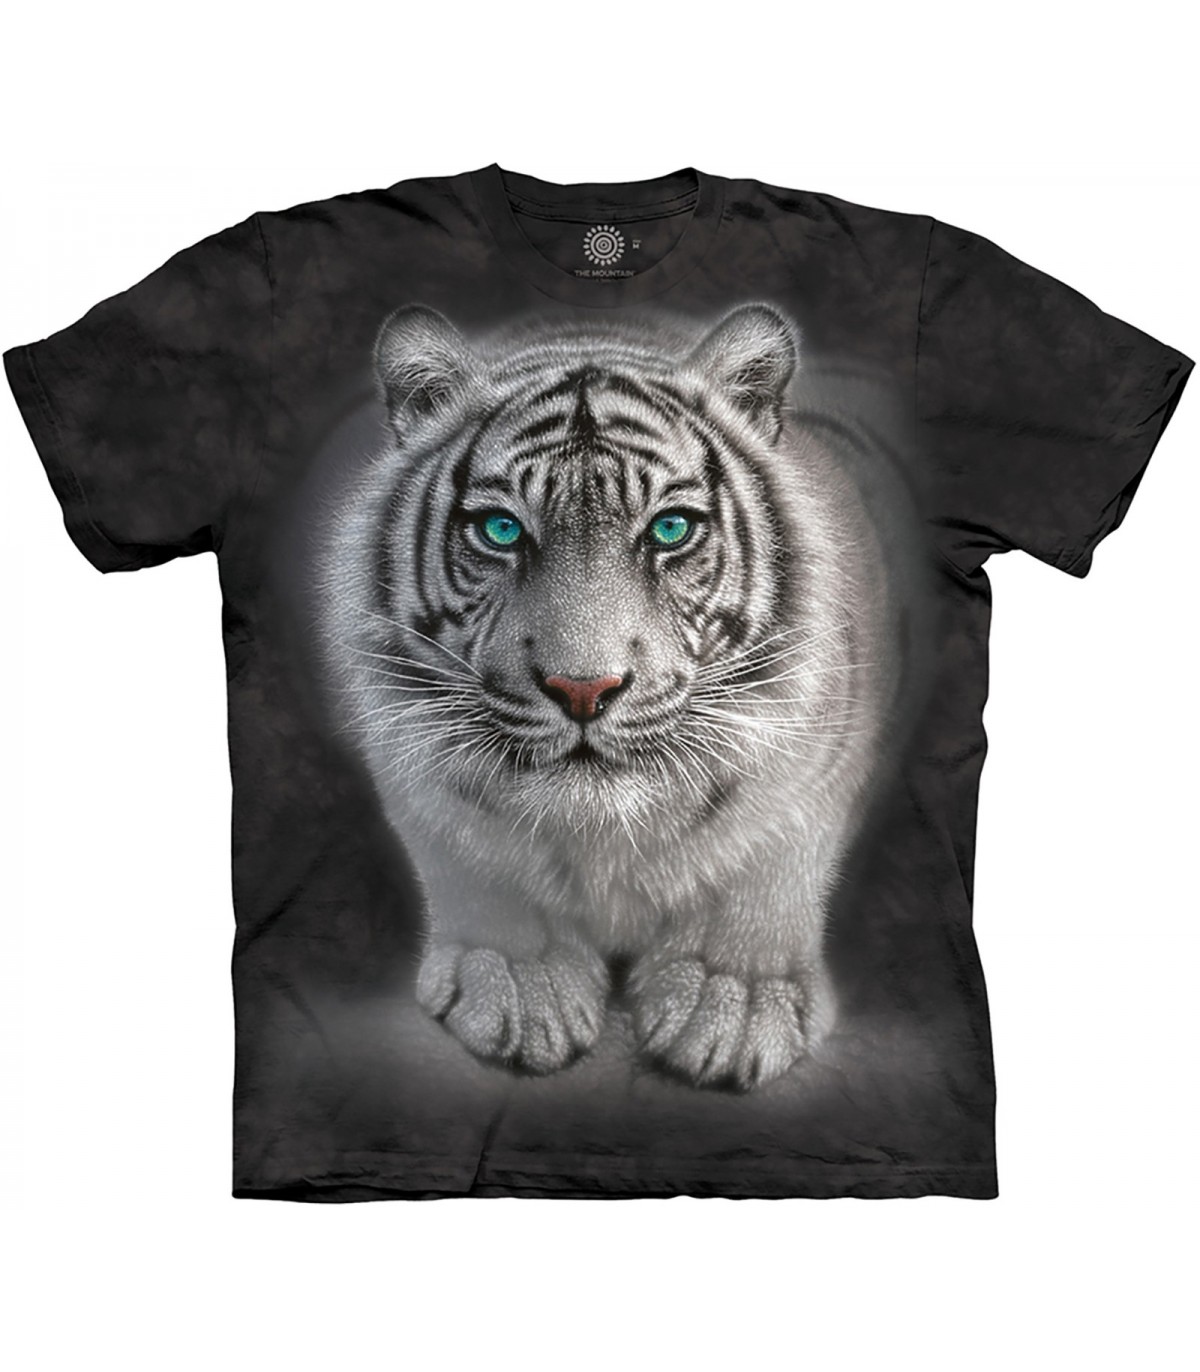 tiger shirt white